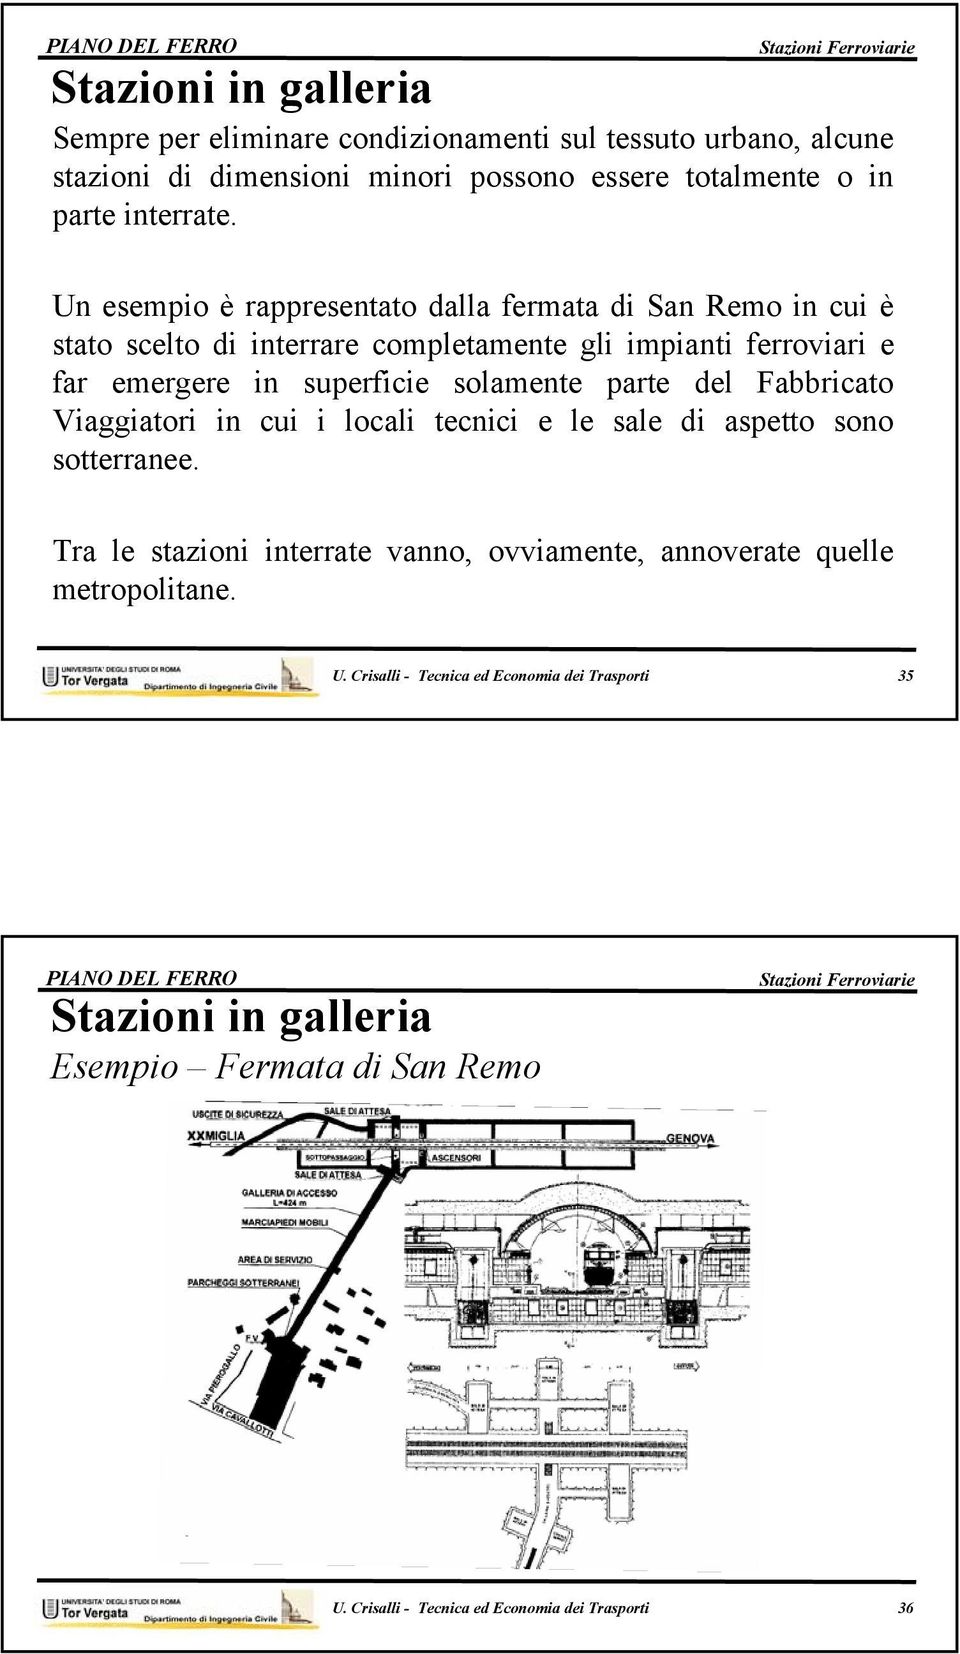 Un esempio è rappresentato dalla fermata di San Remo in cui è stato scelto di interrare completamente gli impianti ferroviari e far emergere in superficie solamente parte